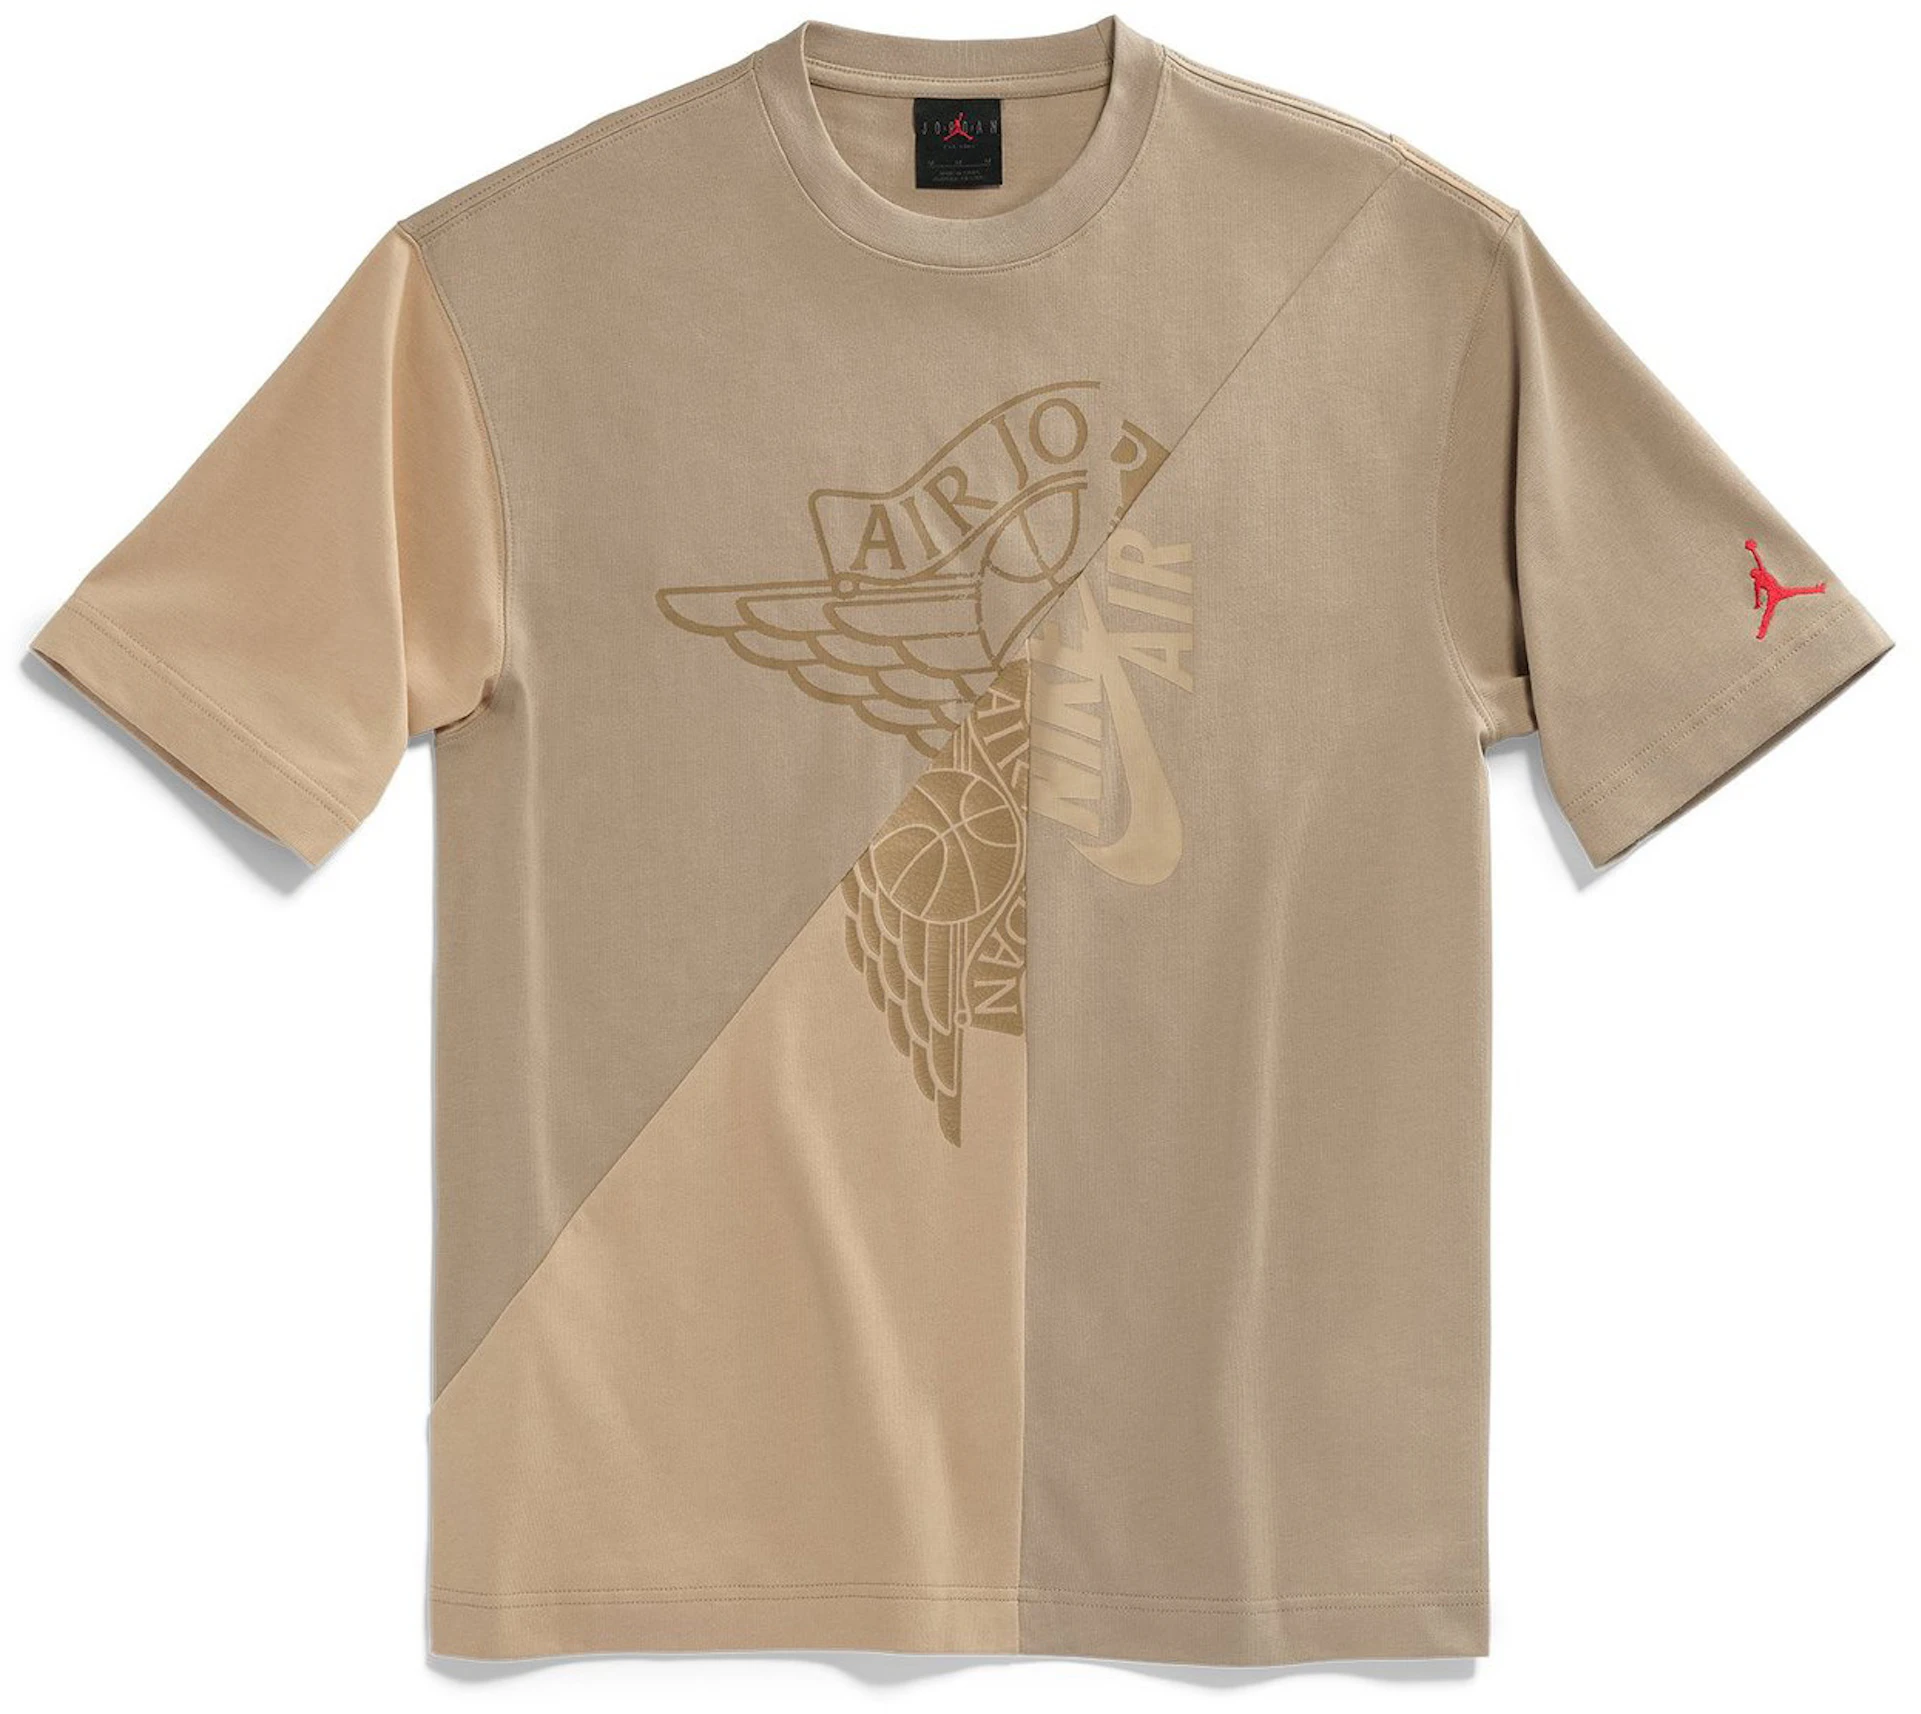 Ruina Conquistador administración Travis Scott Cactus Jack x Jordan T-shirt Khaki/Desert - SS21 - ES